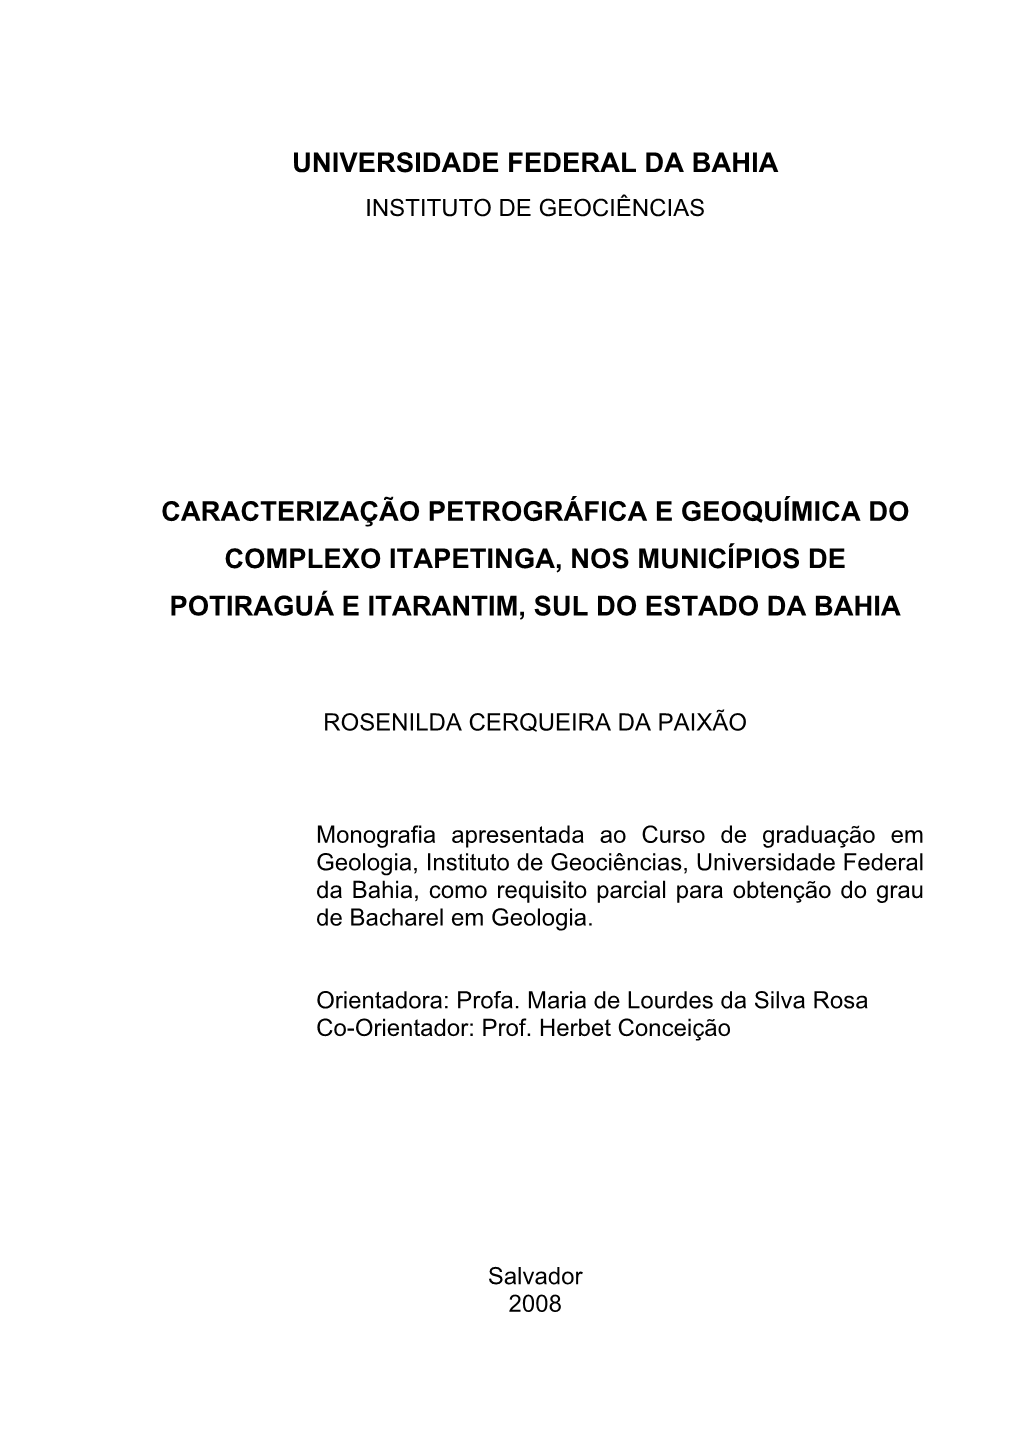 Caracterização Petrográfica E Geoquímica Do Complexo Itapetinga, Nos Municípios De Potiraguá E Itarantim, Sul Do Estado Da Bahia